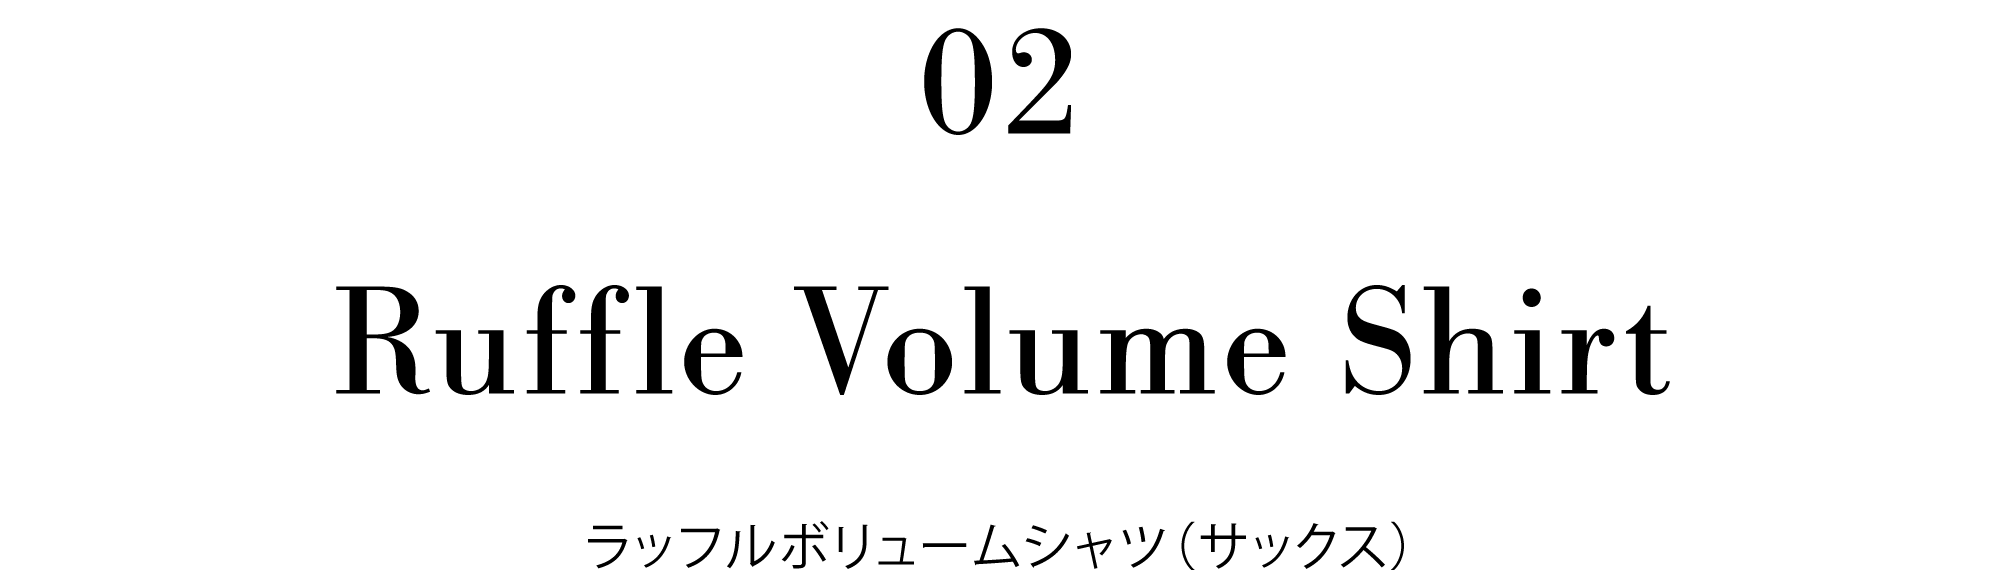 02 Ruffle Volume Shirt